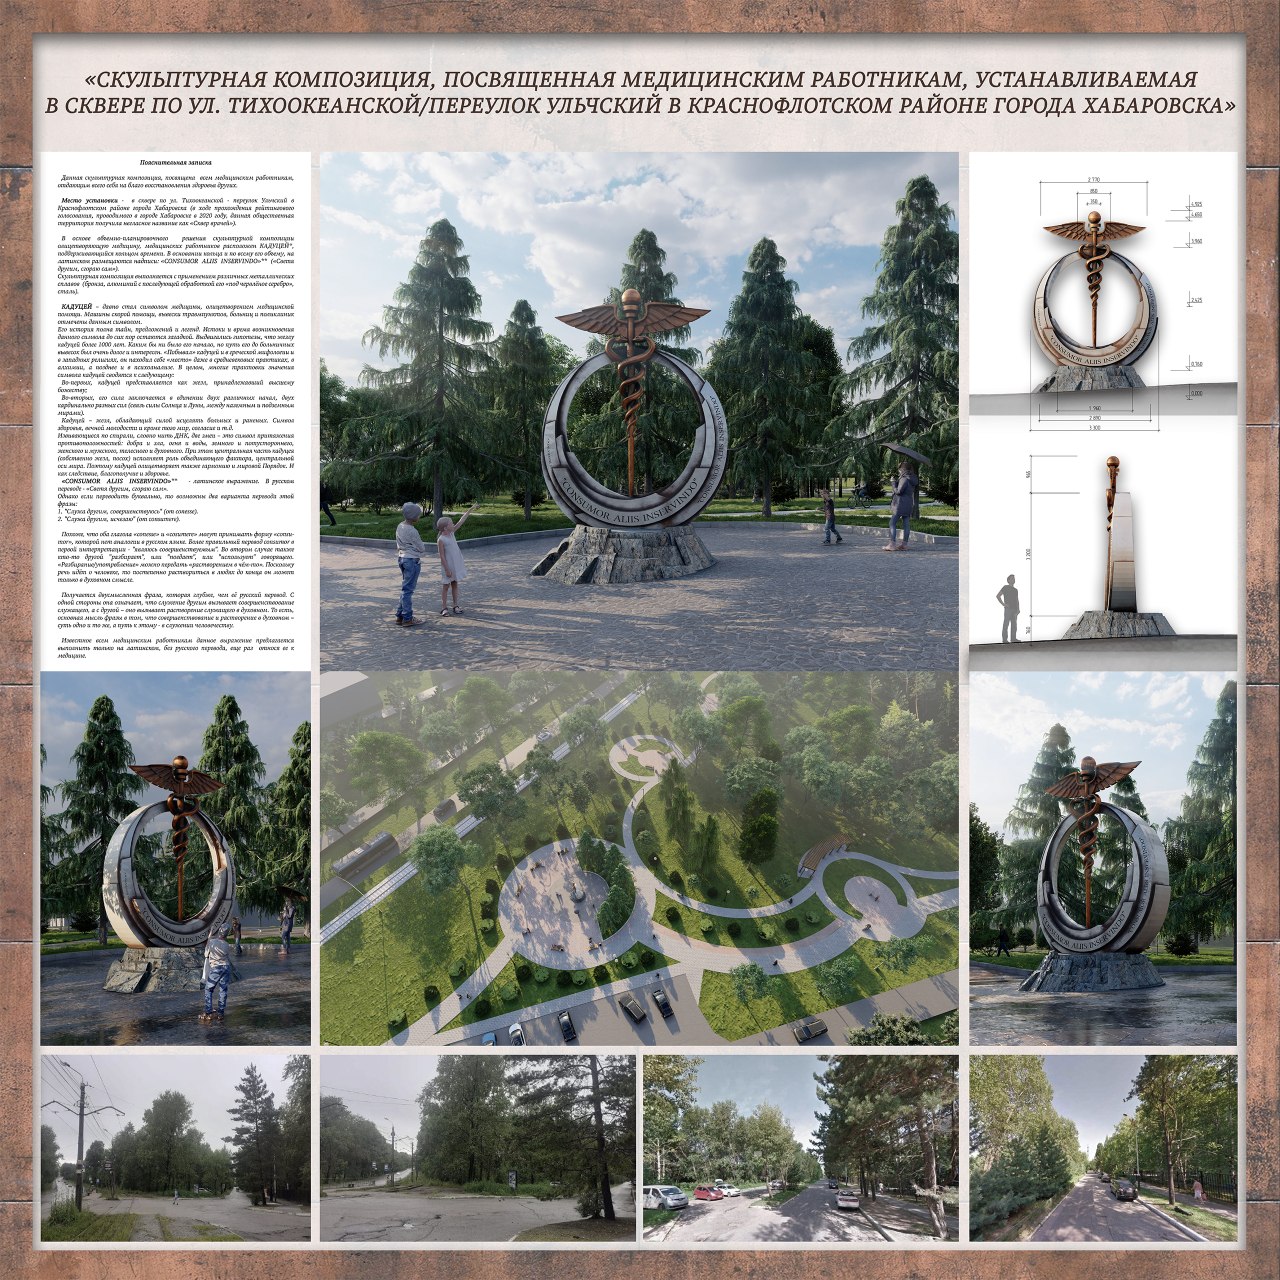 В Хабаровске утвержден проект скульптуры, посвященной медицинским работникам